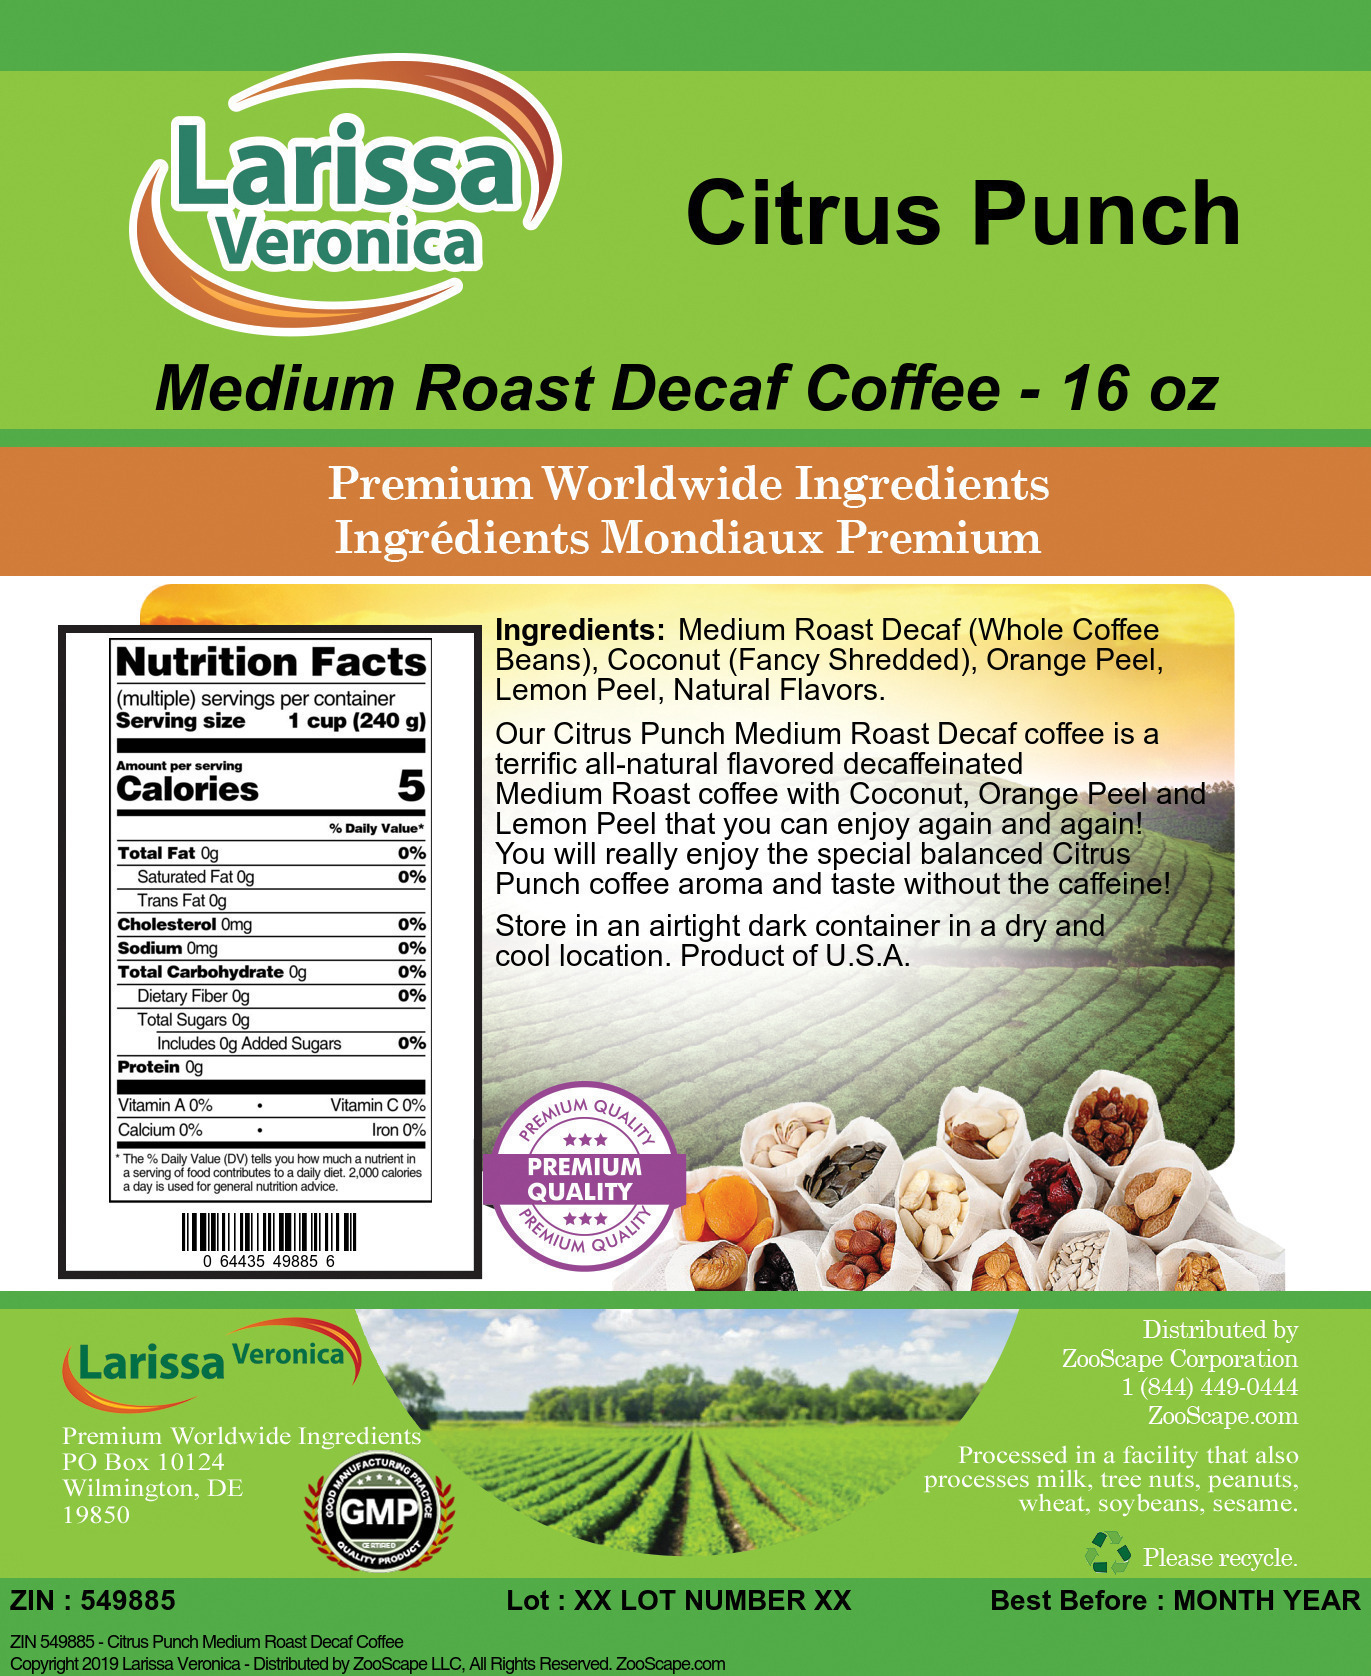 Citrus Punch Medium Roast Decaf Coffee - Label